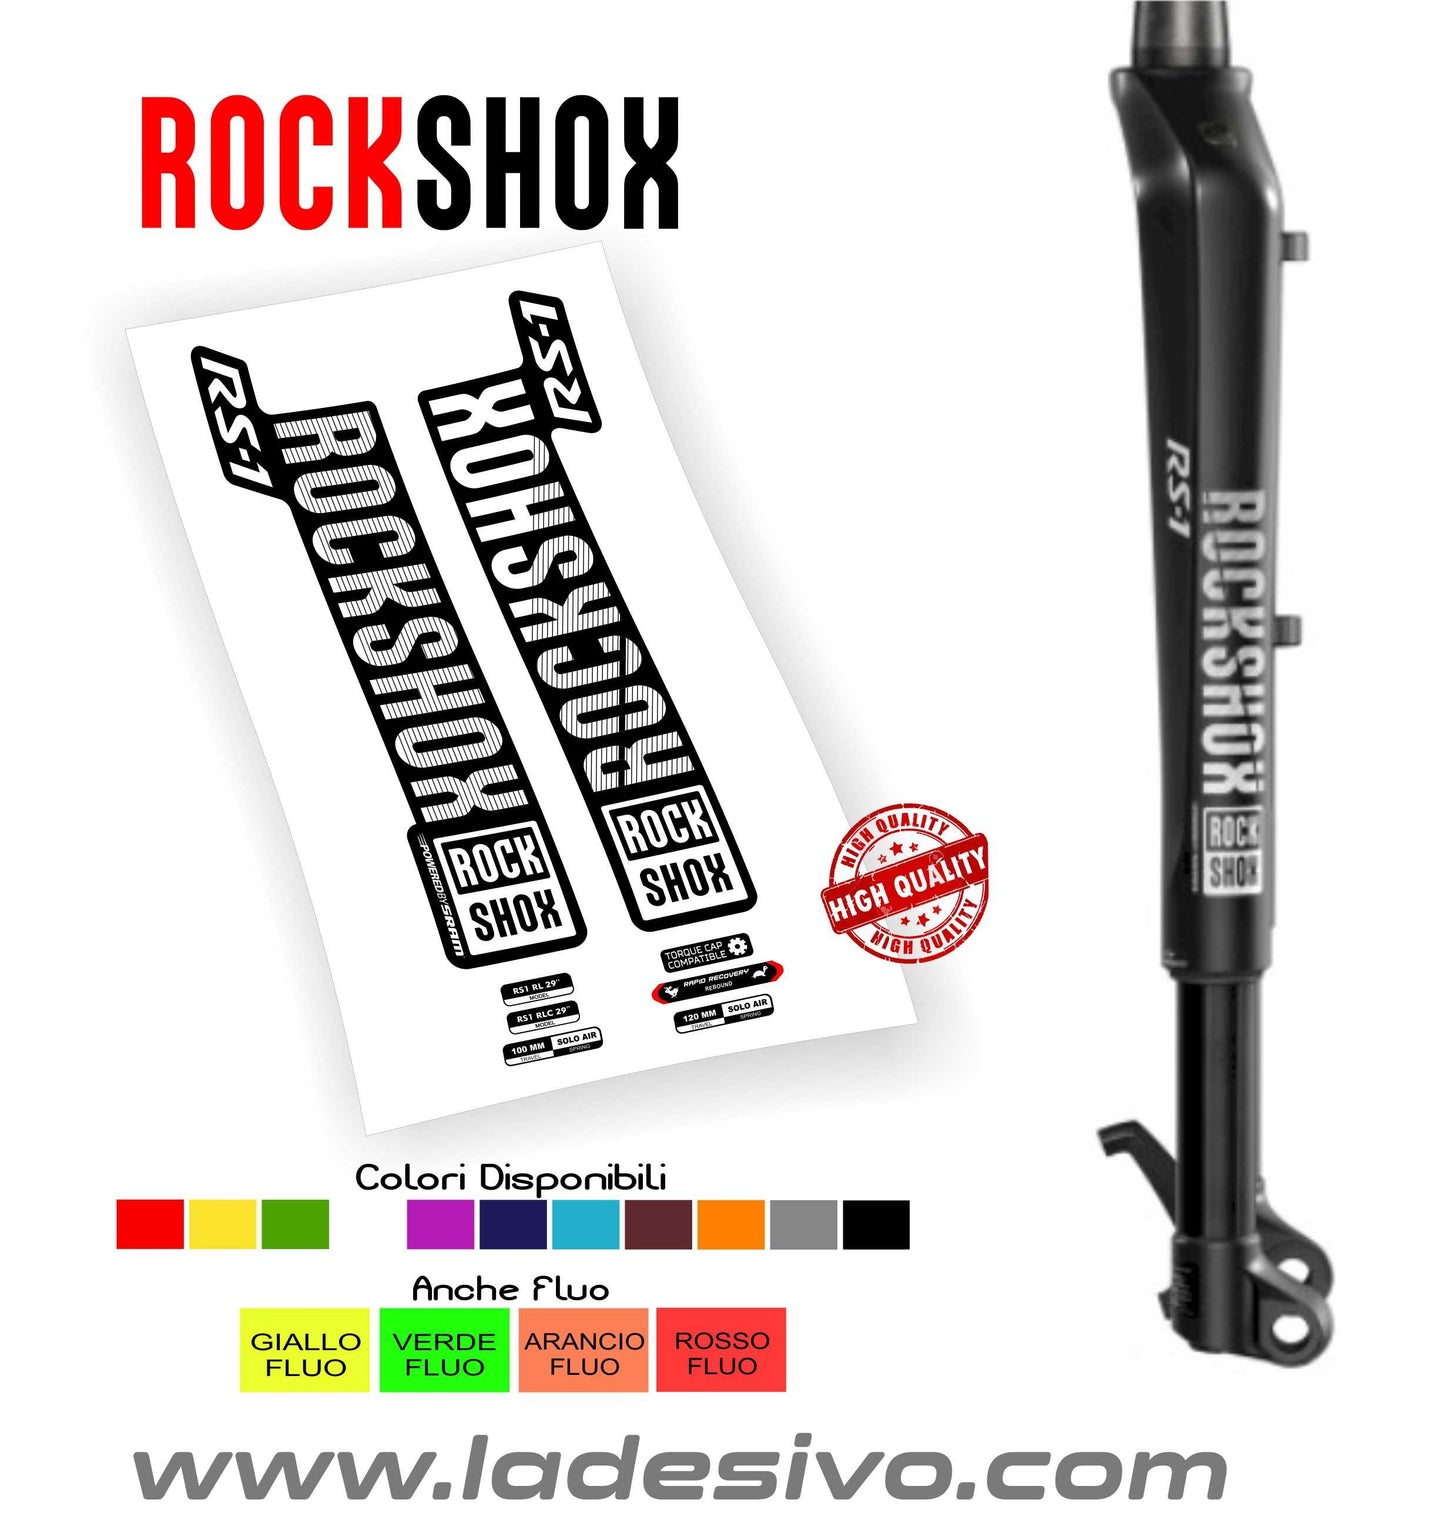 Rock shox RS-1 RL RLC 29 anno 2018 adesivi stickers personalizzati forcella rs1